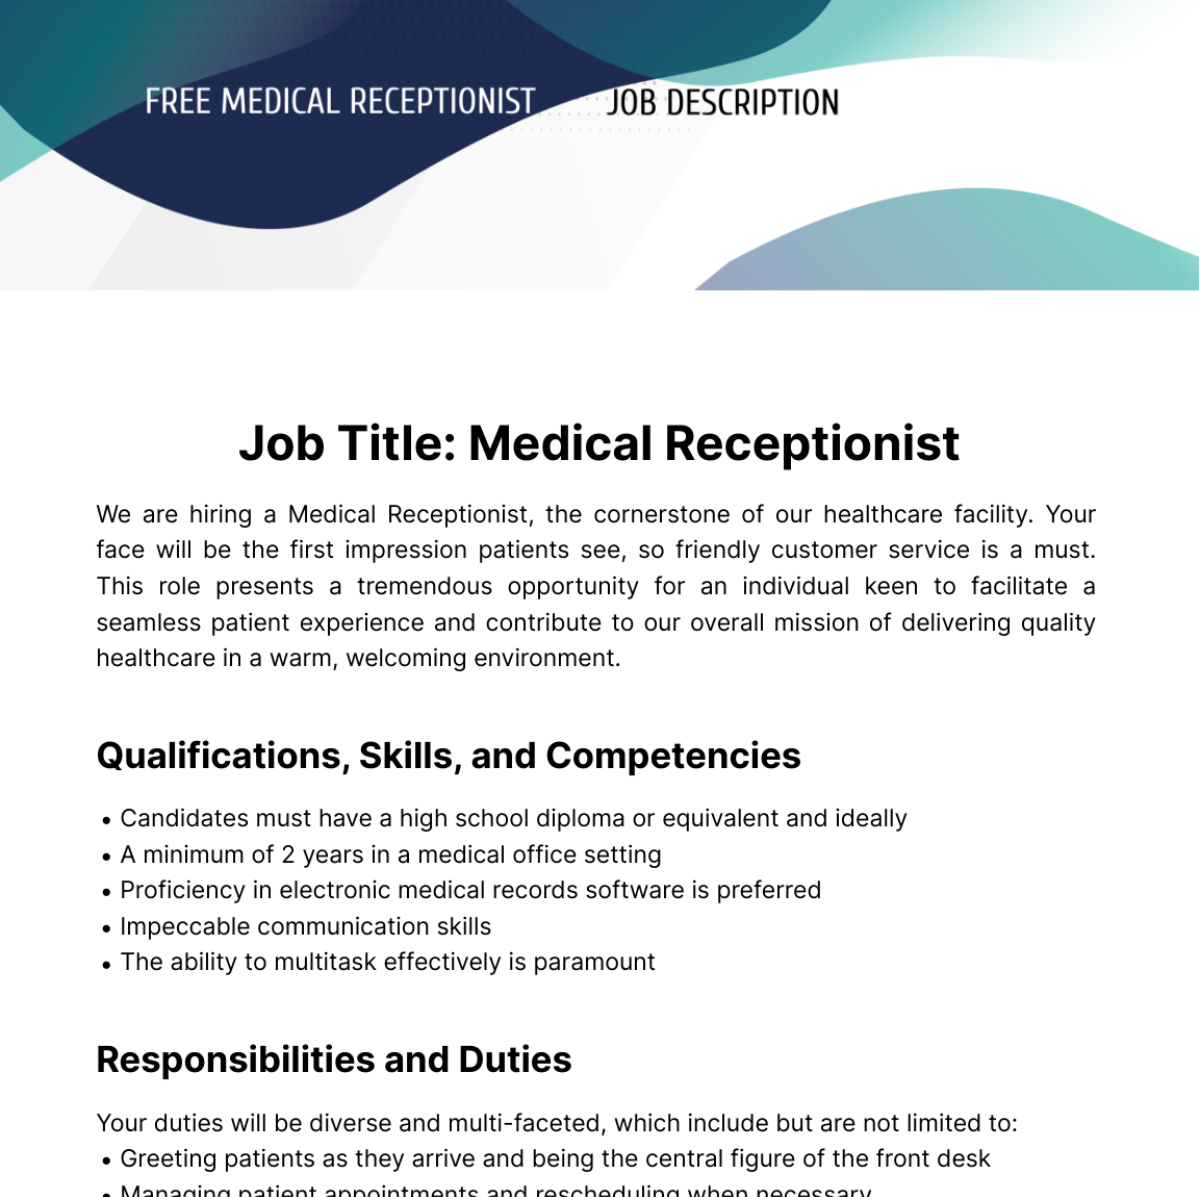 Free Medical Receptionist Job Description Template